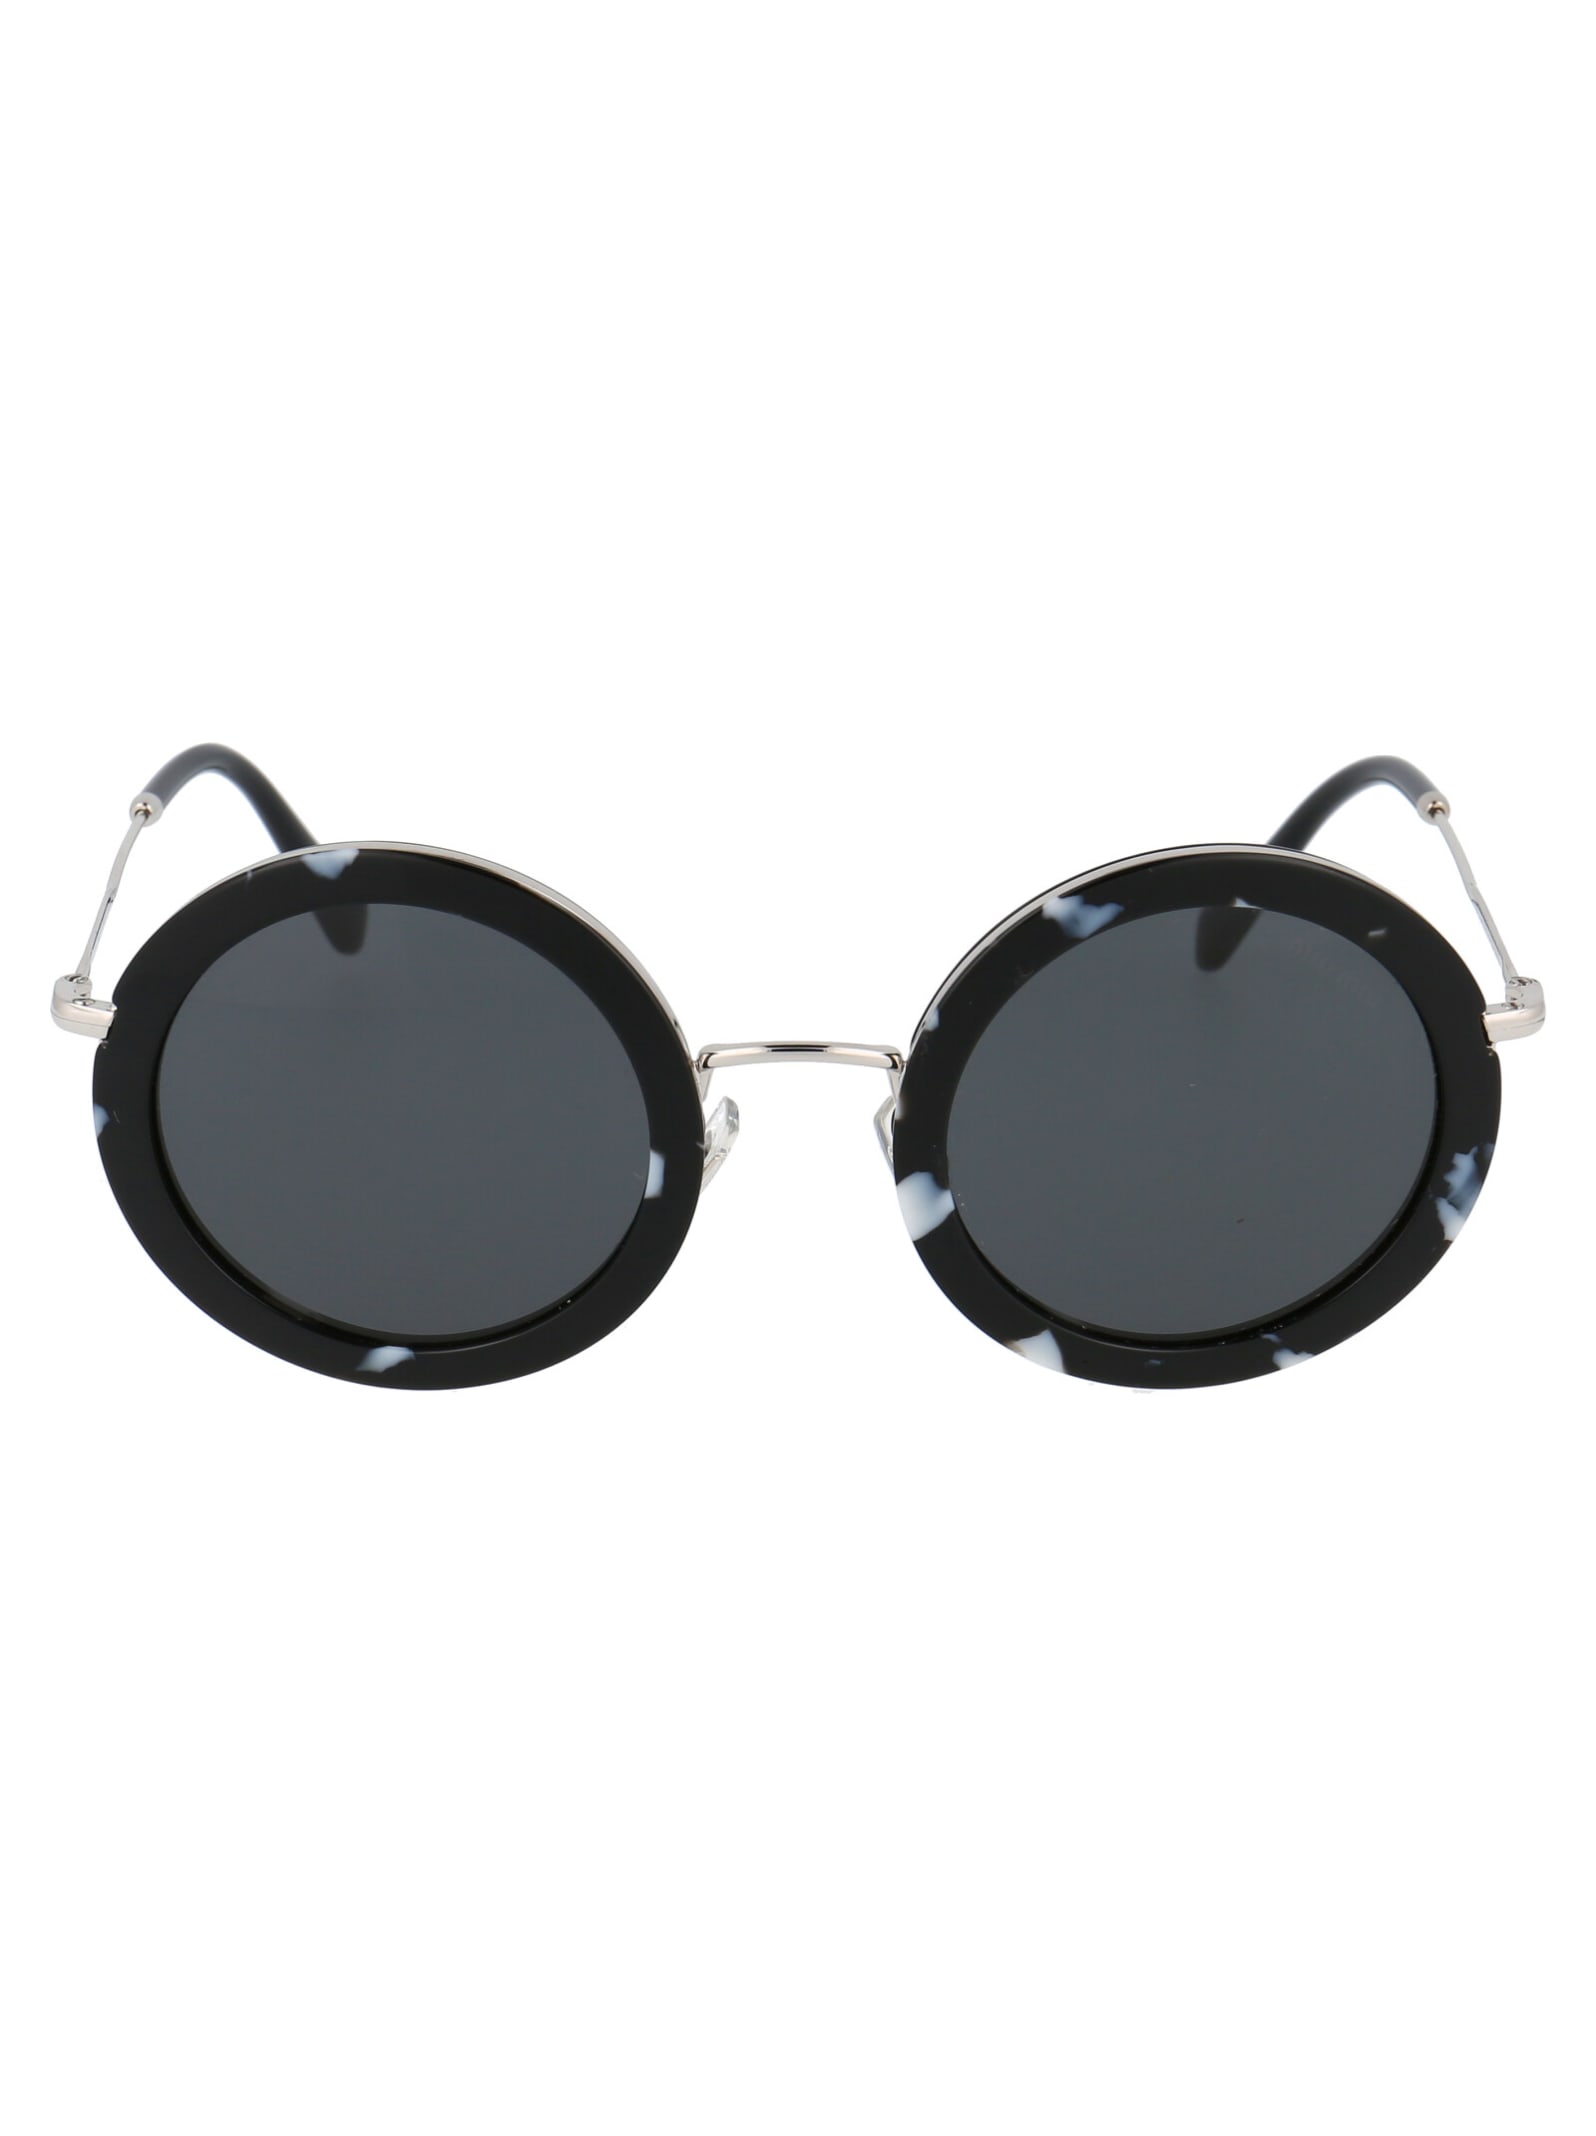 Miu Miu Eyewear 0mu 59us Sunglasses